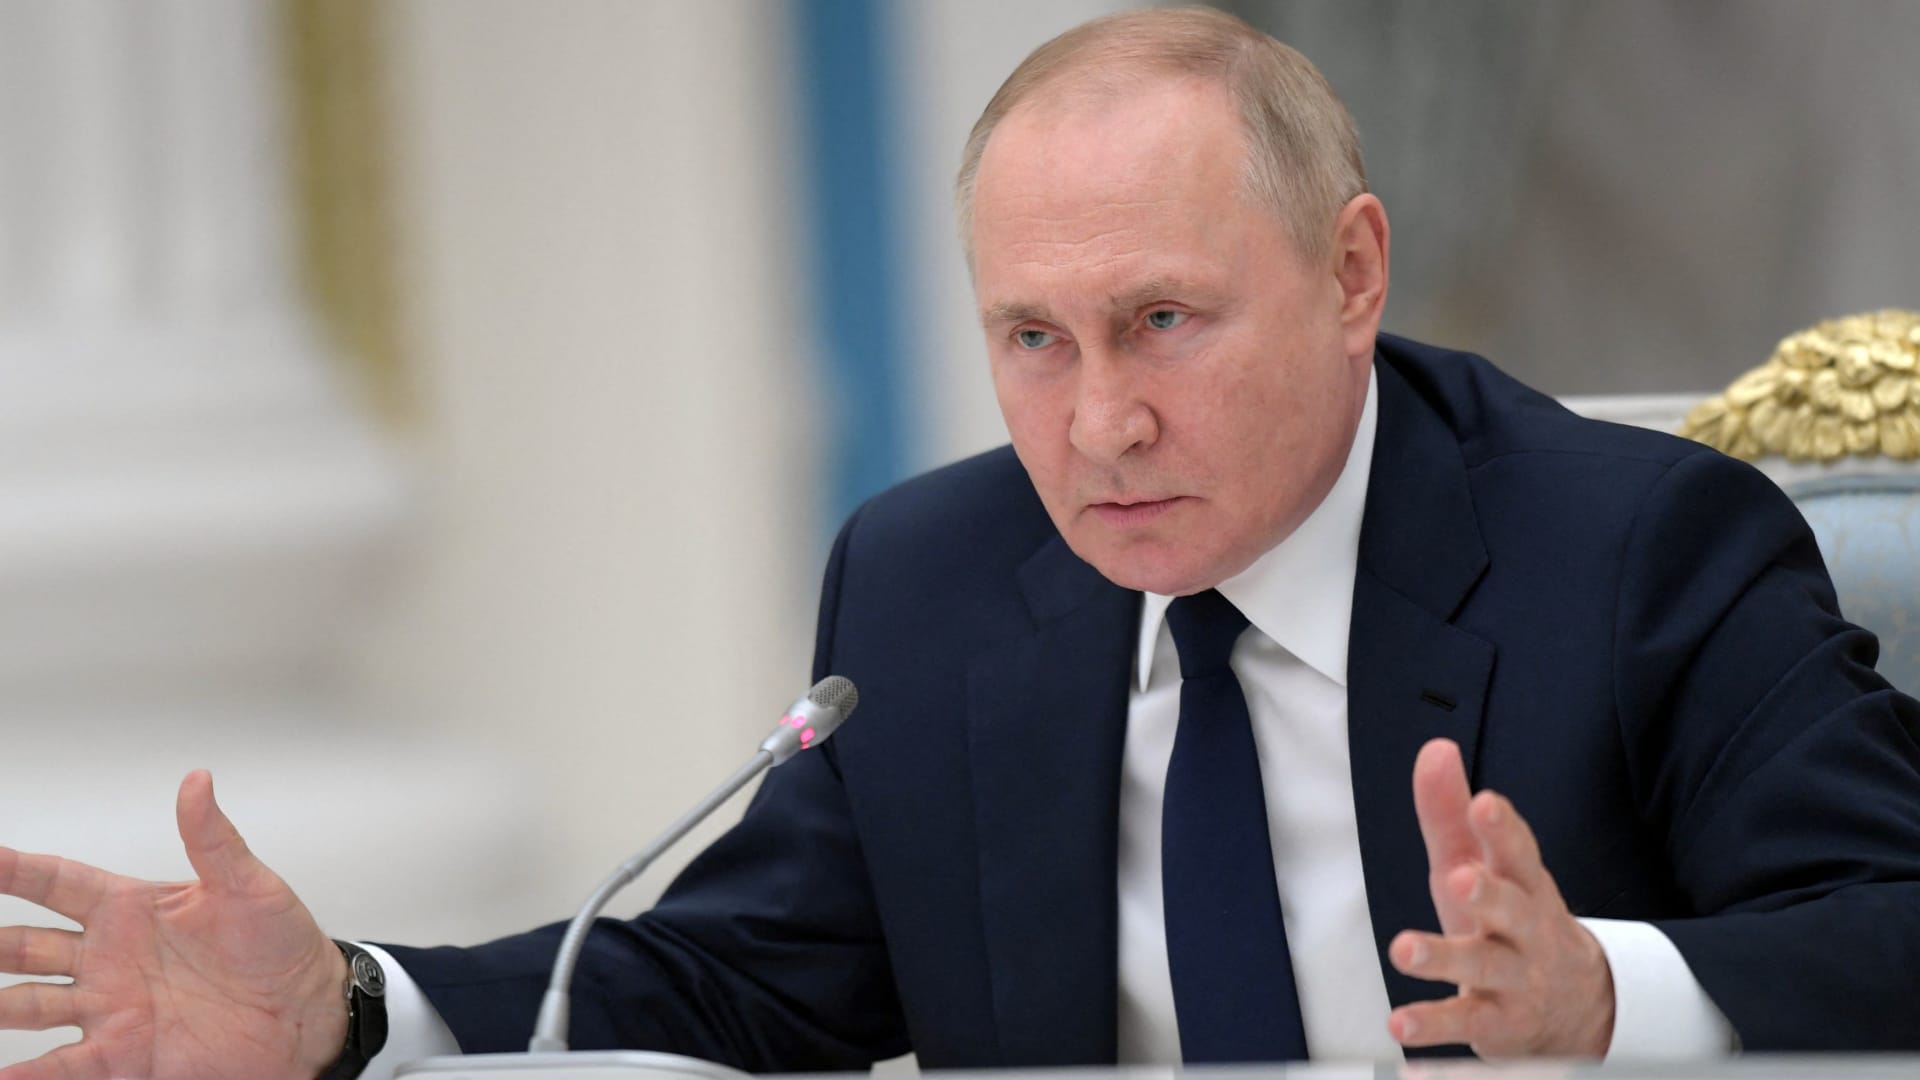 러시아는 단기 회복력에도 불구하고 ‘경제적 건망증’에 직면해 있다